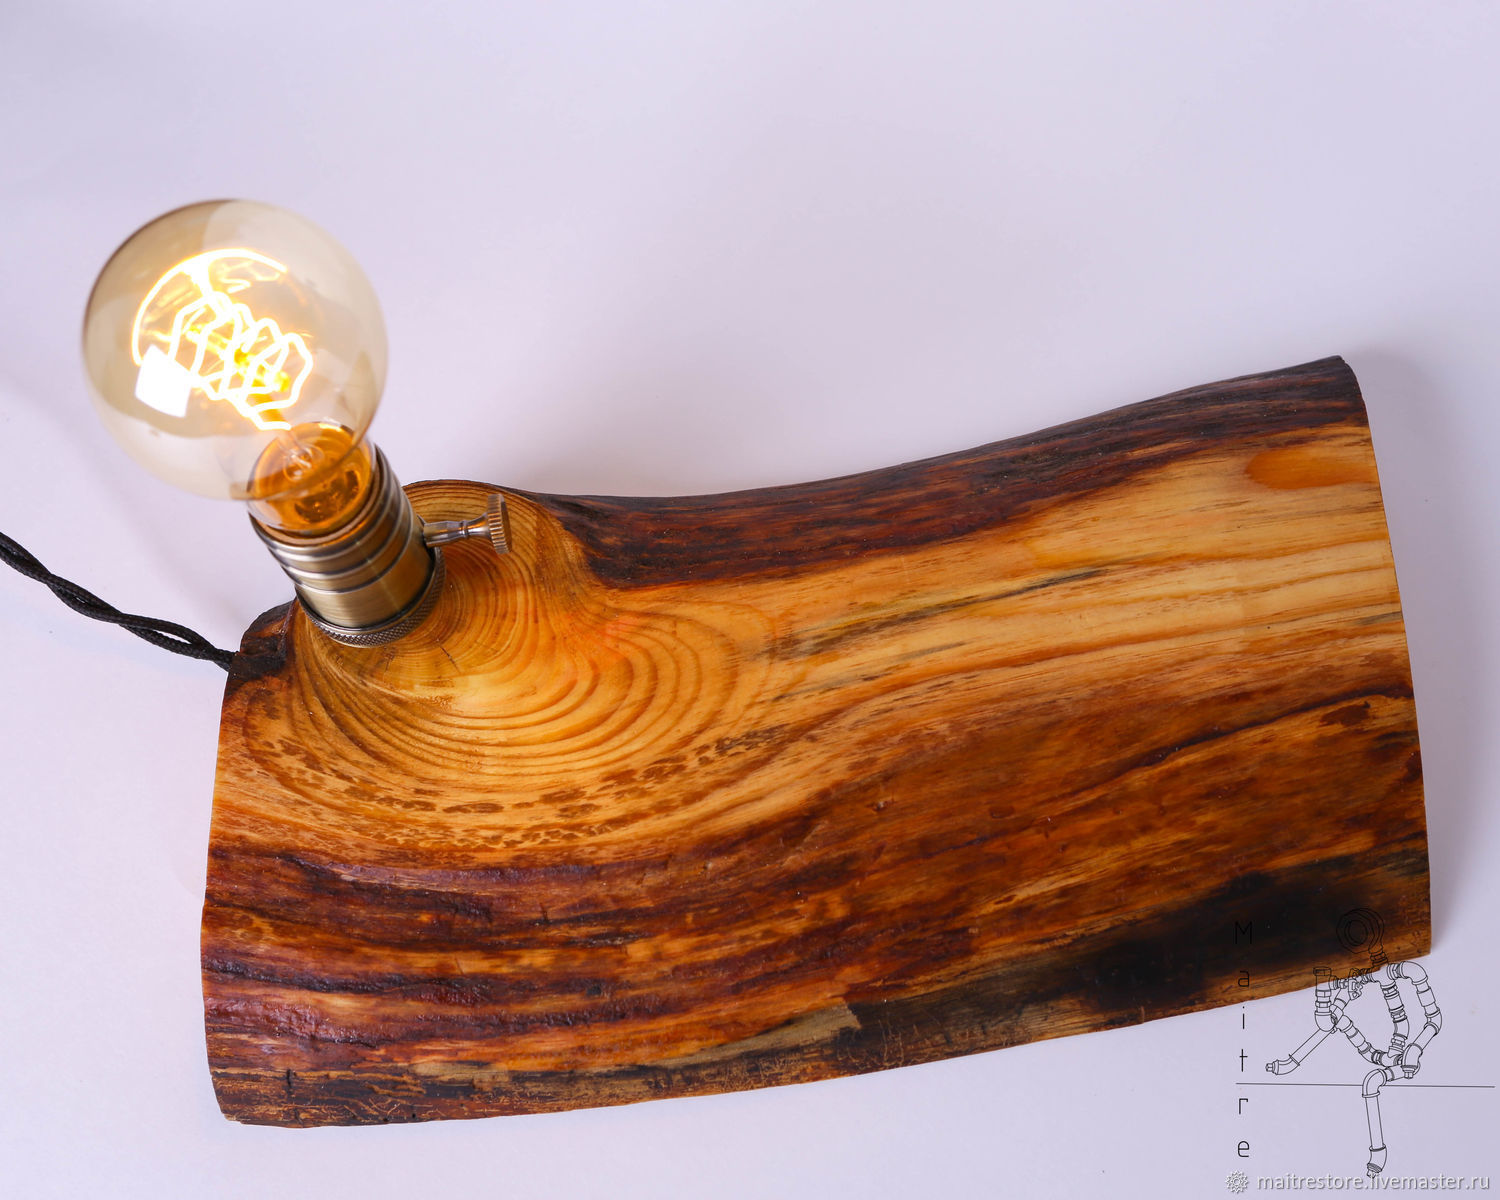 Светильник своими руками - лучшие идеи как сделать оригинальные осветительные приборы